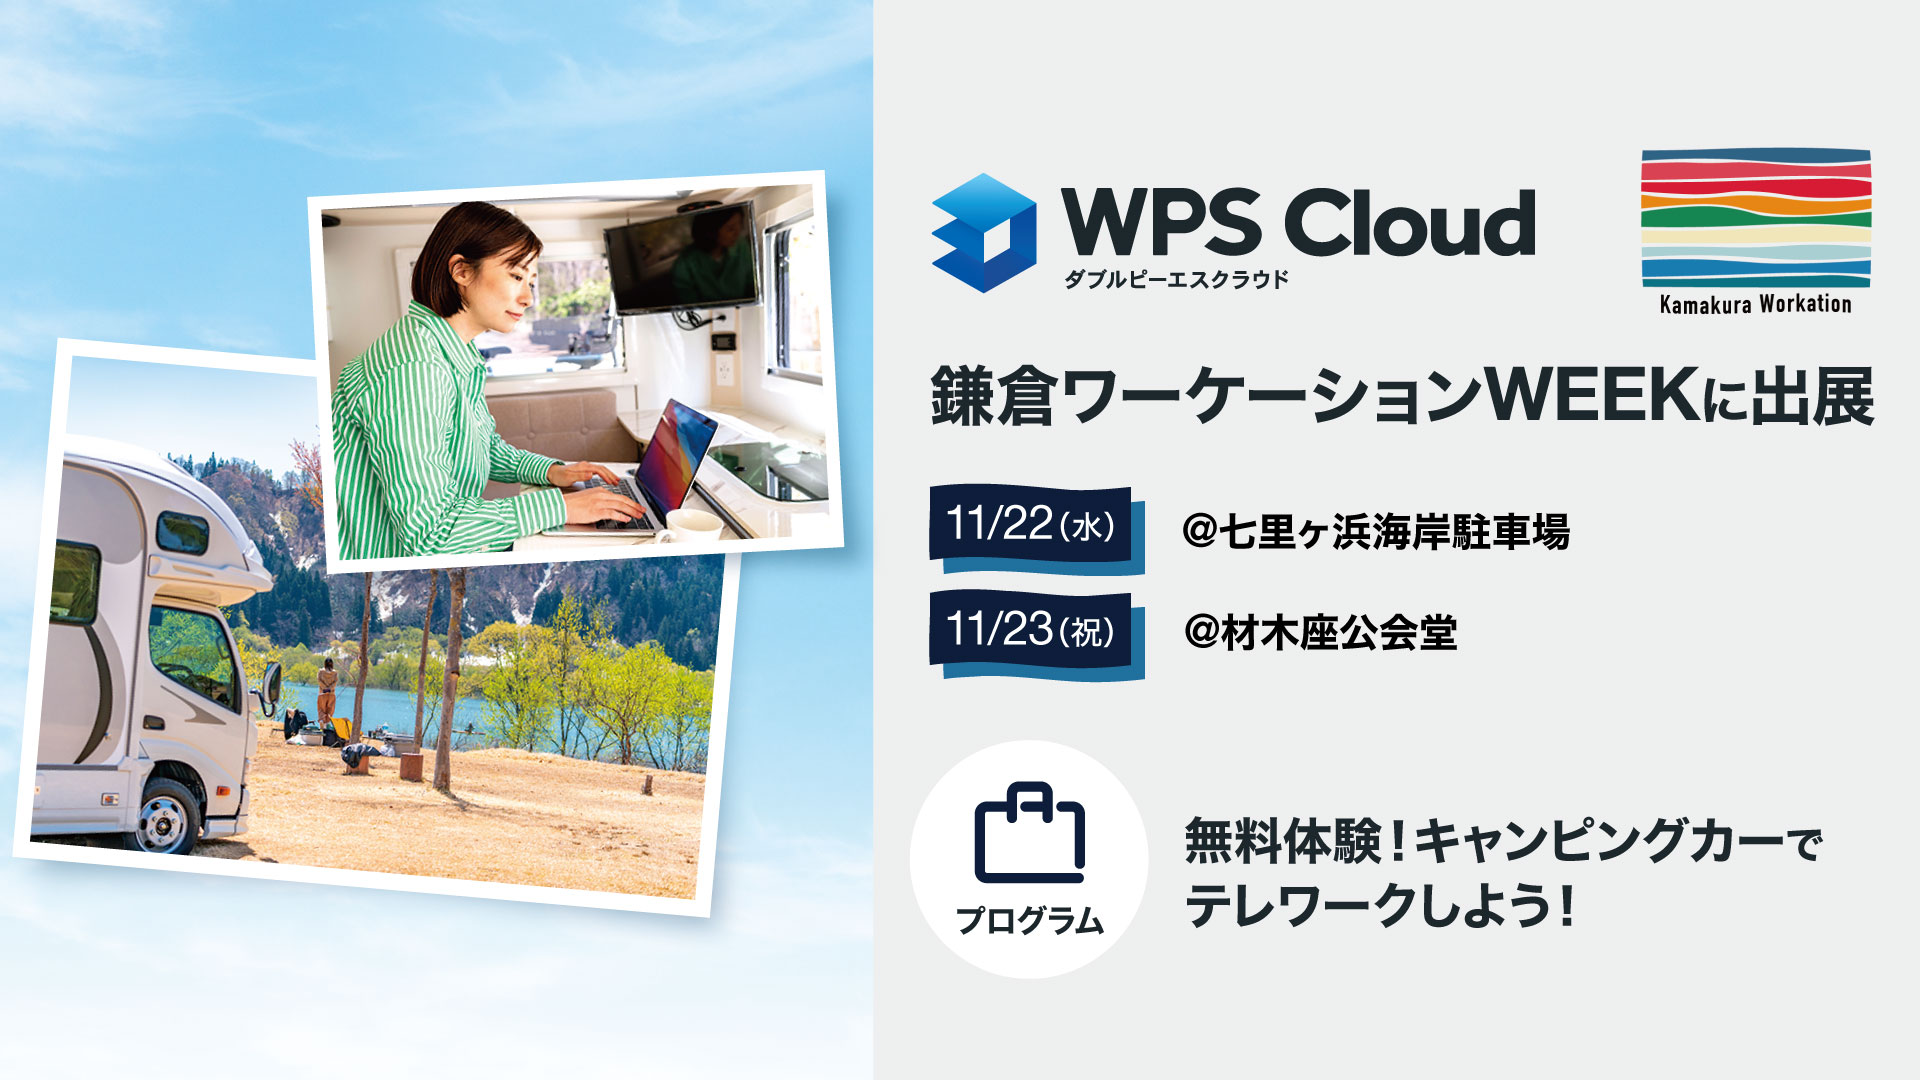 【11/22(水)、23(祝)】キングソフトが鎌倉ワーケーションWEEKにWPS Cloudキャンピングカーを出展